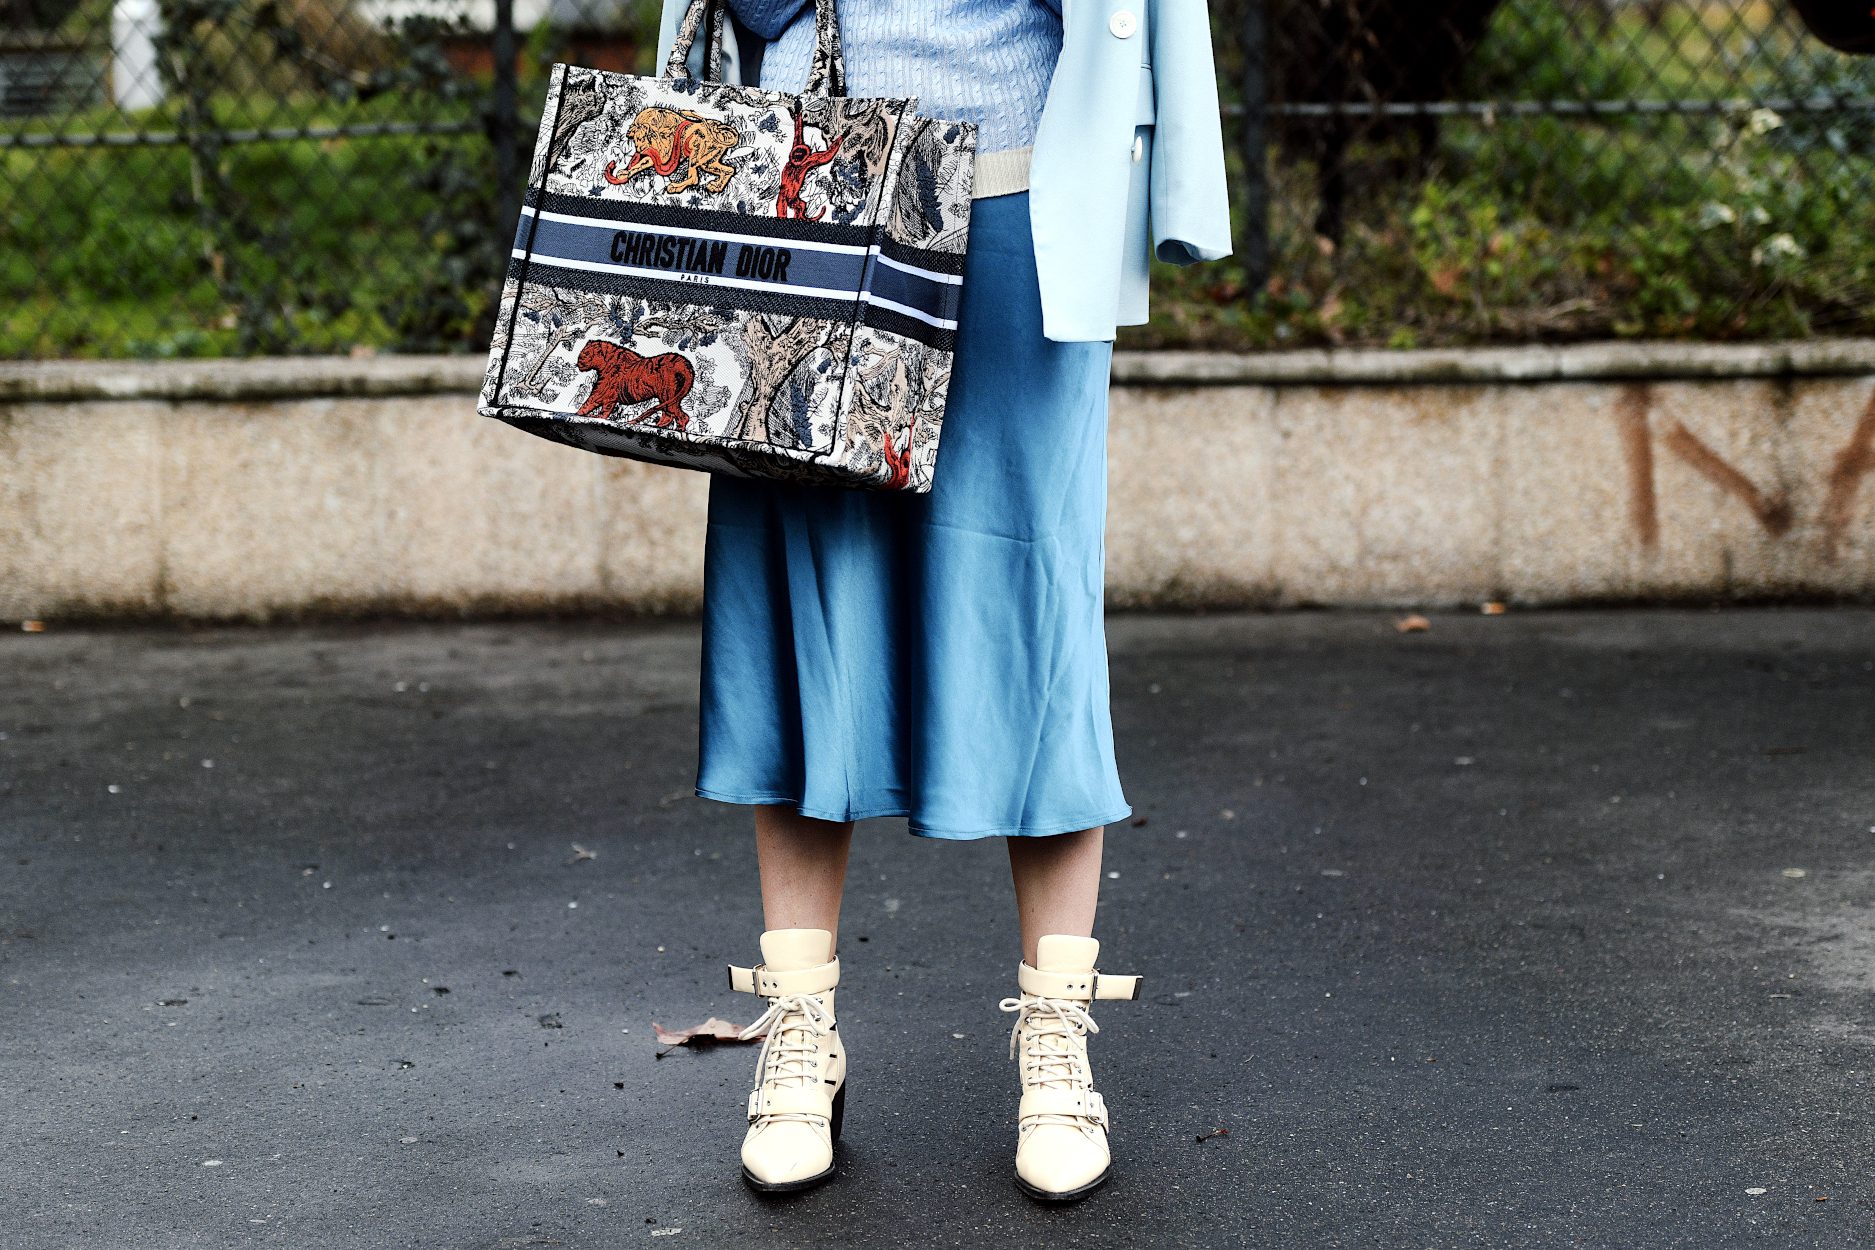 La jupe bleu ciel : comment faut-il la porter dans son look ?